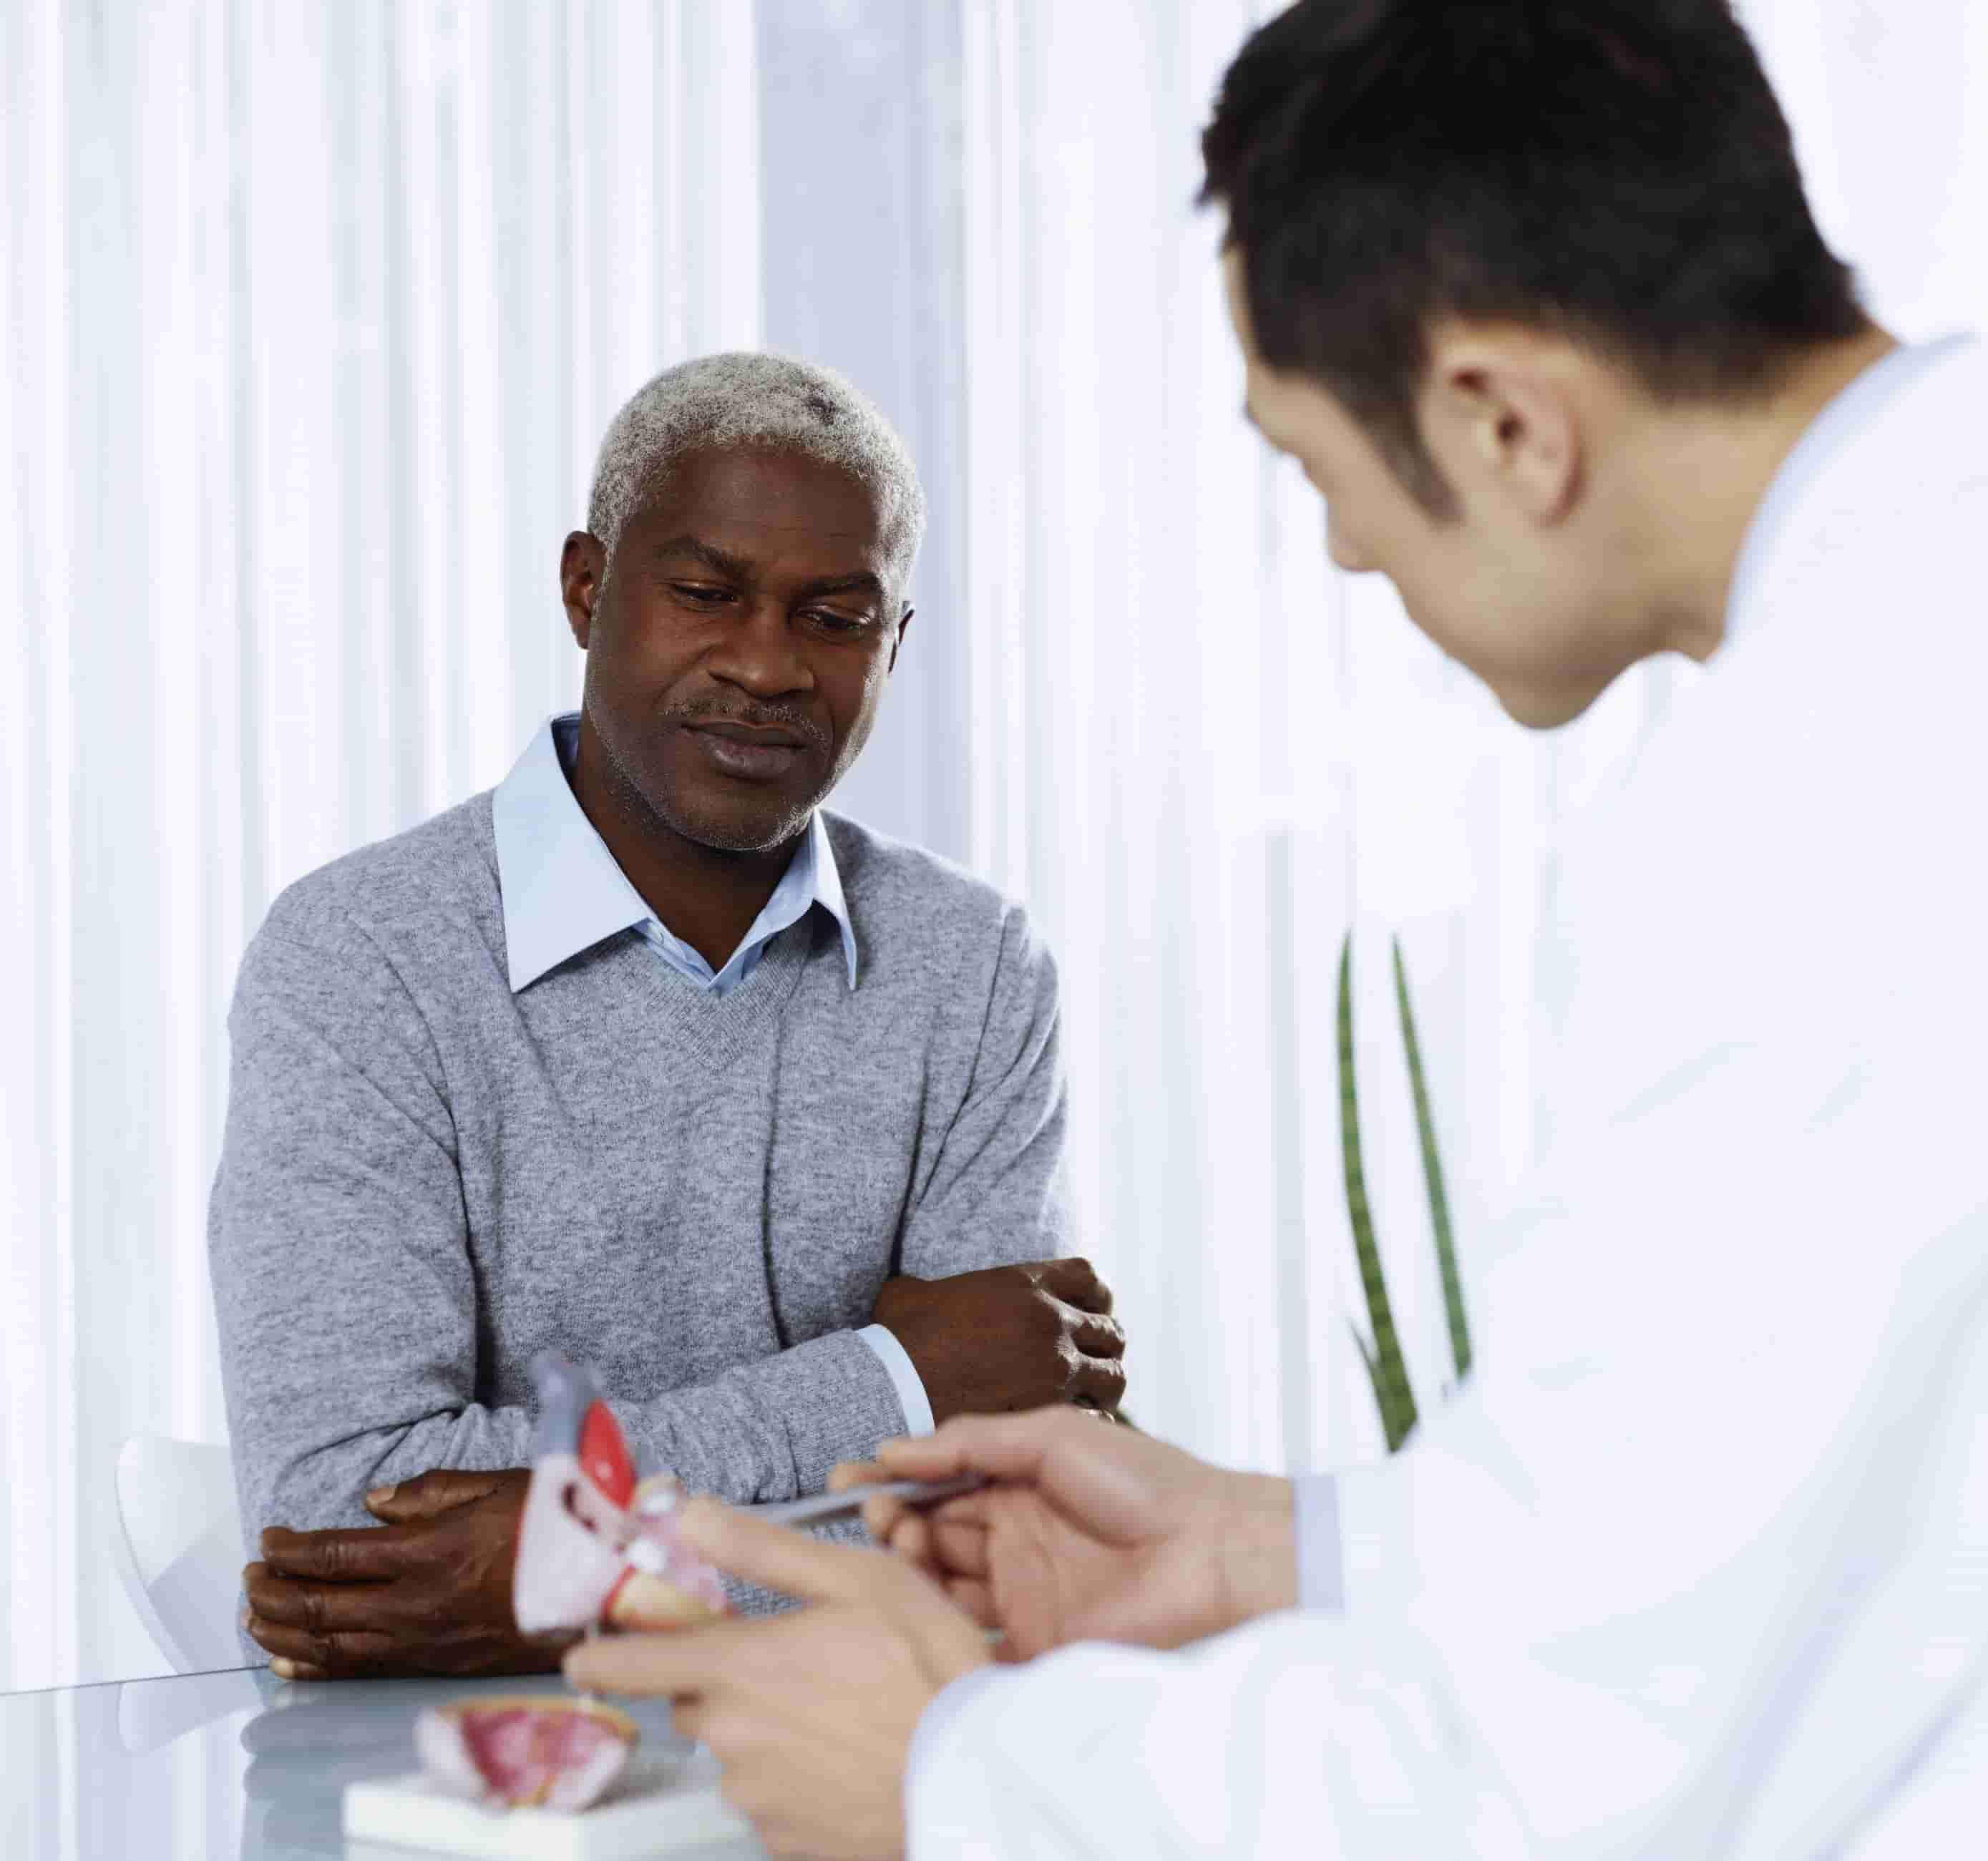 Na foto, há um senhor negro de meia idade sentado a frente de um médico que está lhe explicando algo, com uma maquete de coração na mão.